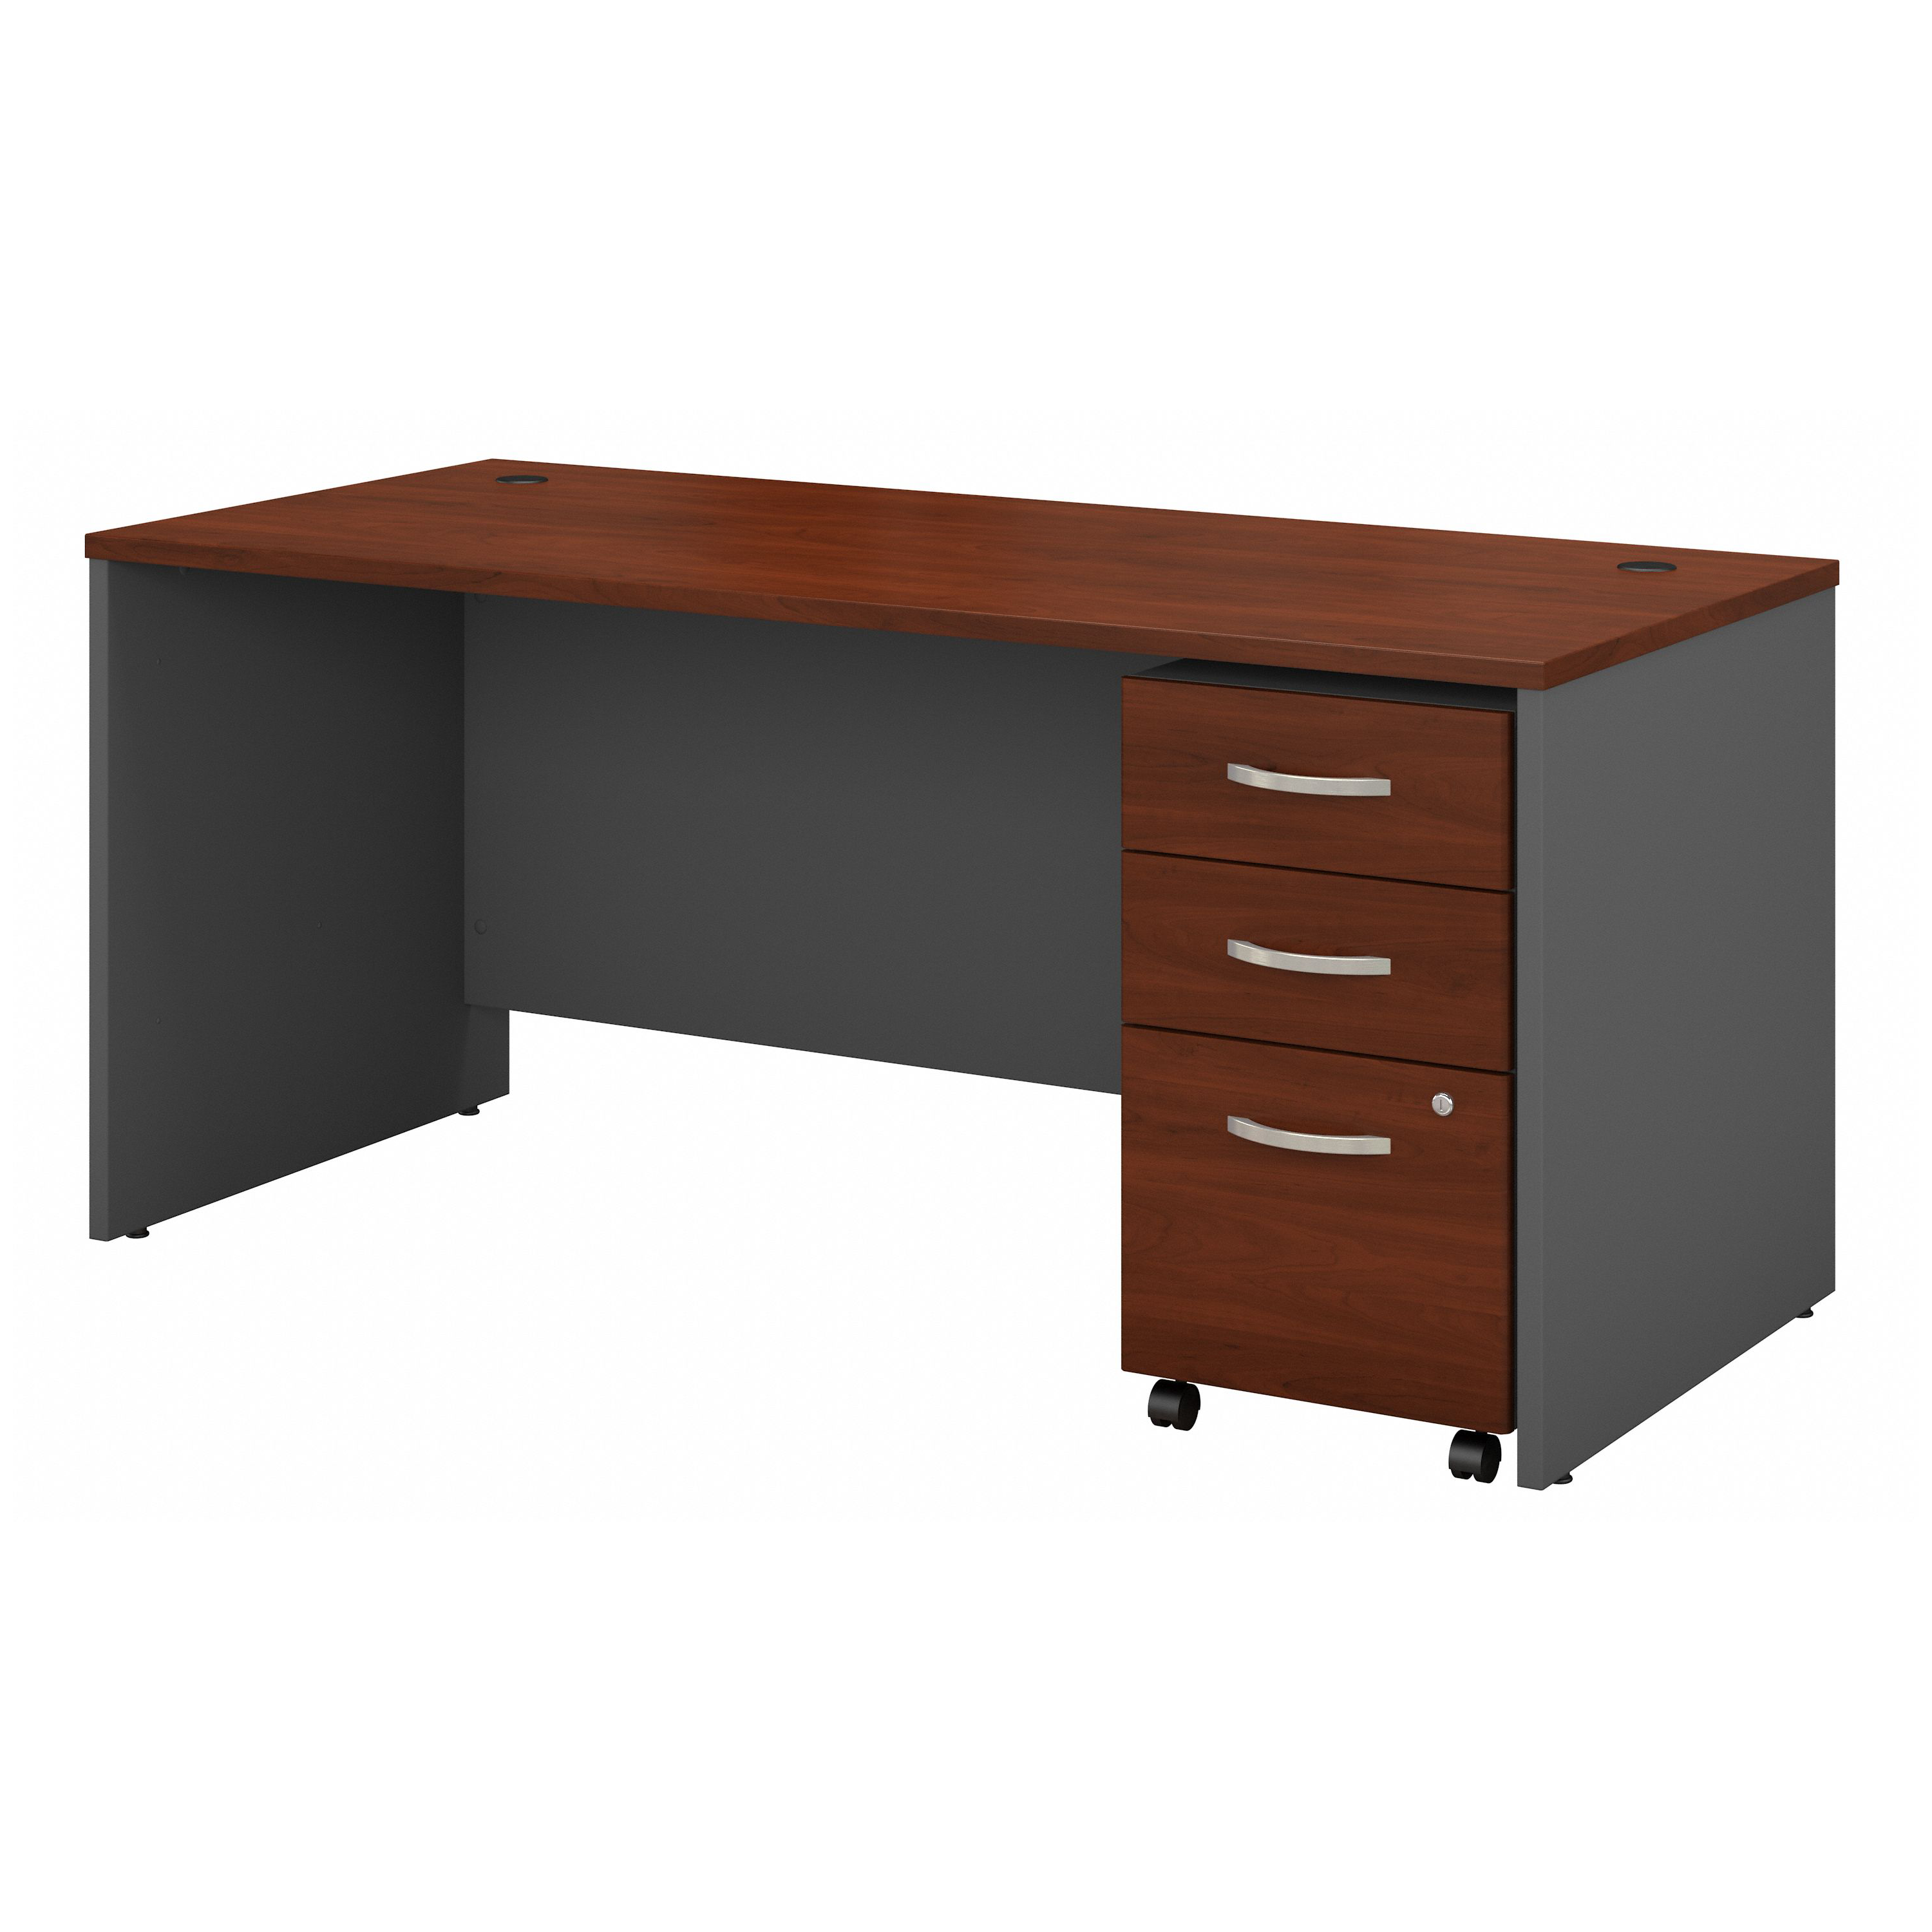 Shop Bush Business Furniture Series C 66W x 30D Office Desk with Mobile File Cabinet 02 SRC015HCSU #color_hansen cherry